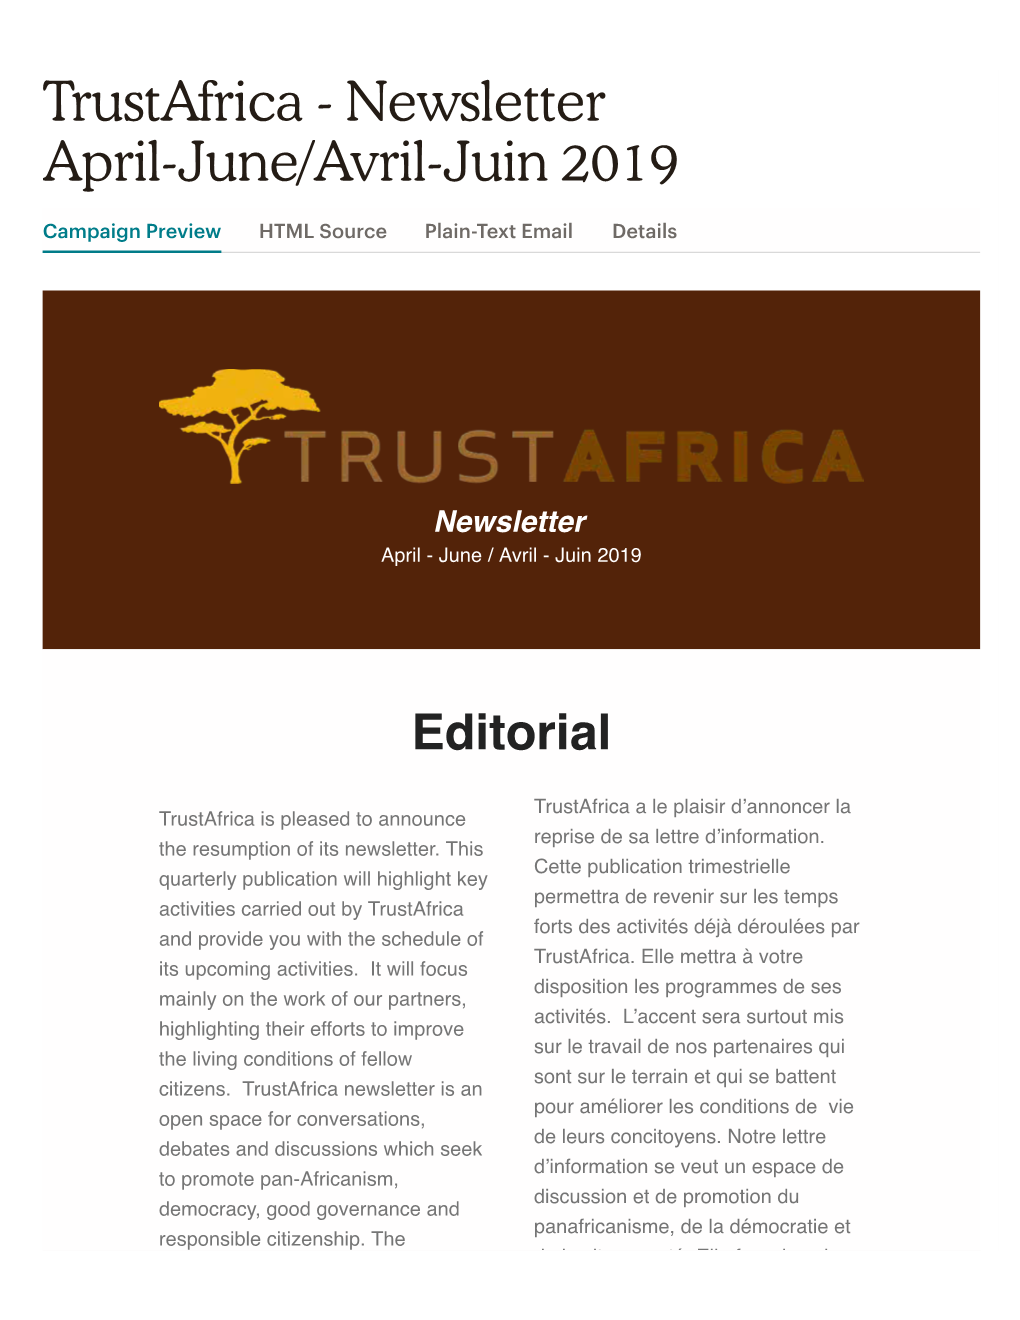 Trustafrica - Newsletter April-June/Avril-Juin 2019